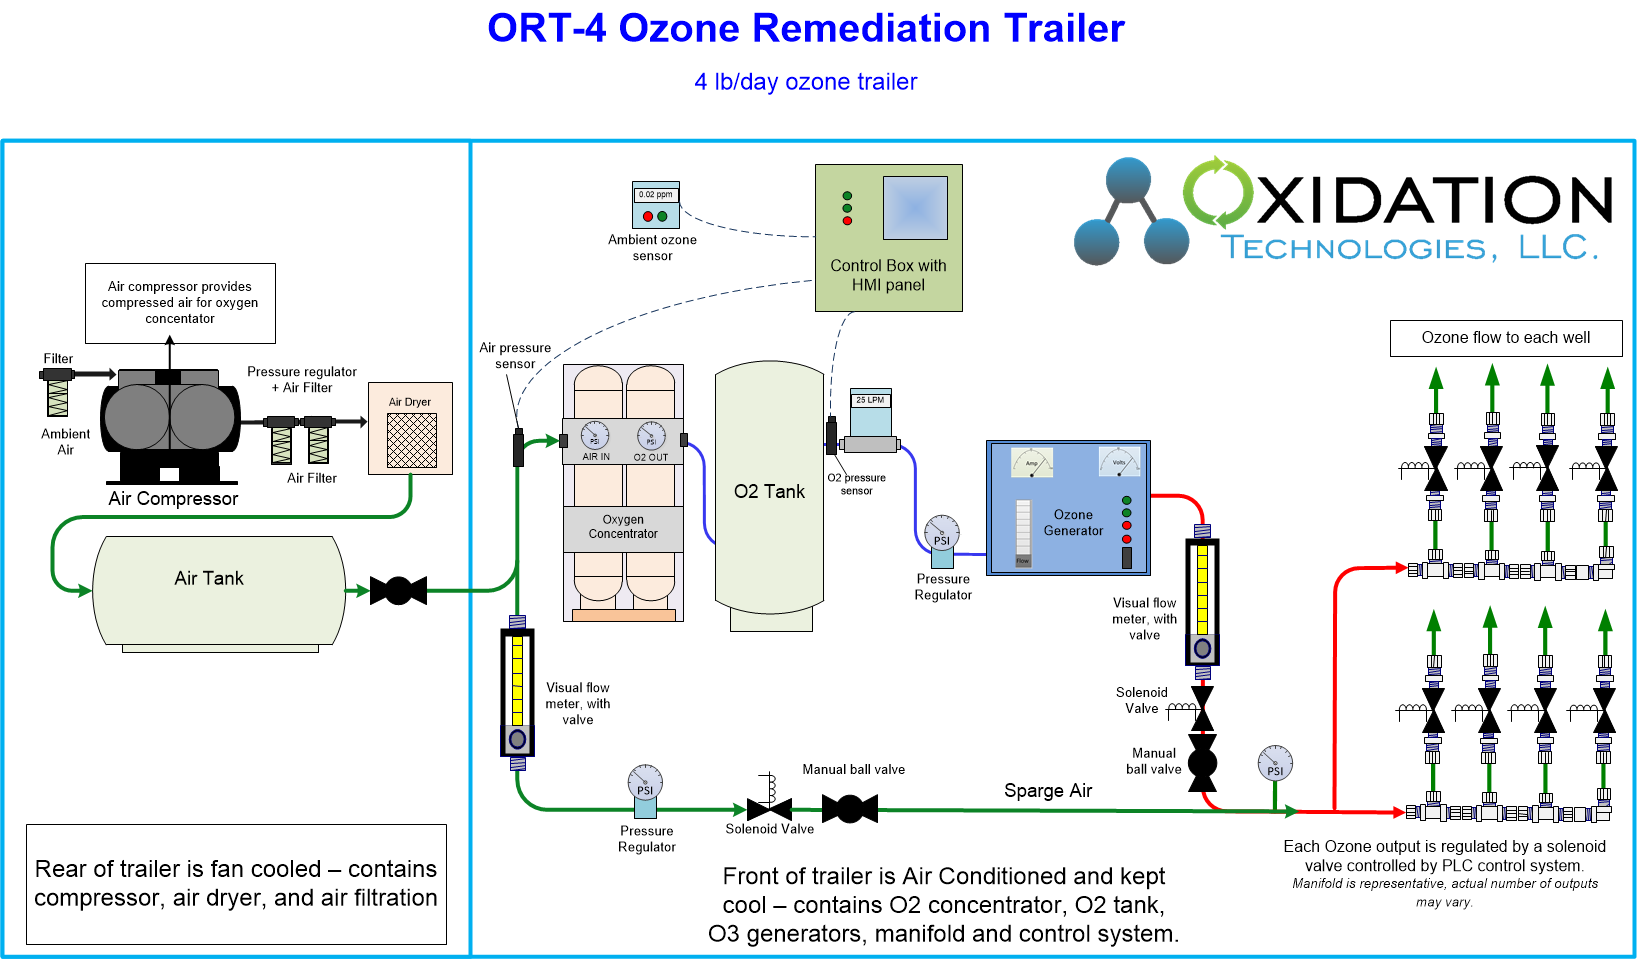 6 lb/day ozone remediation trailer diagram